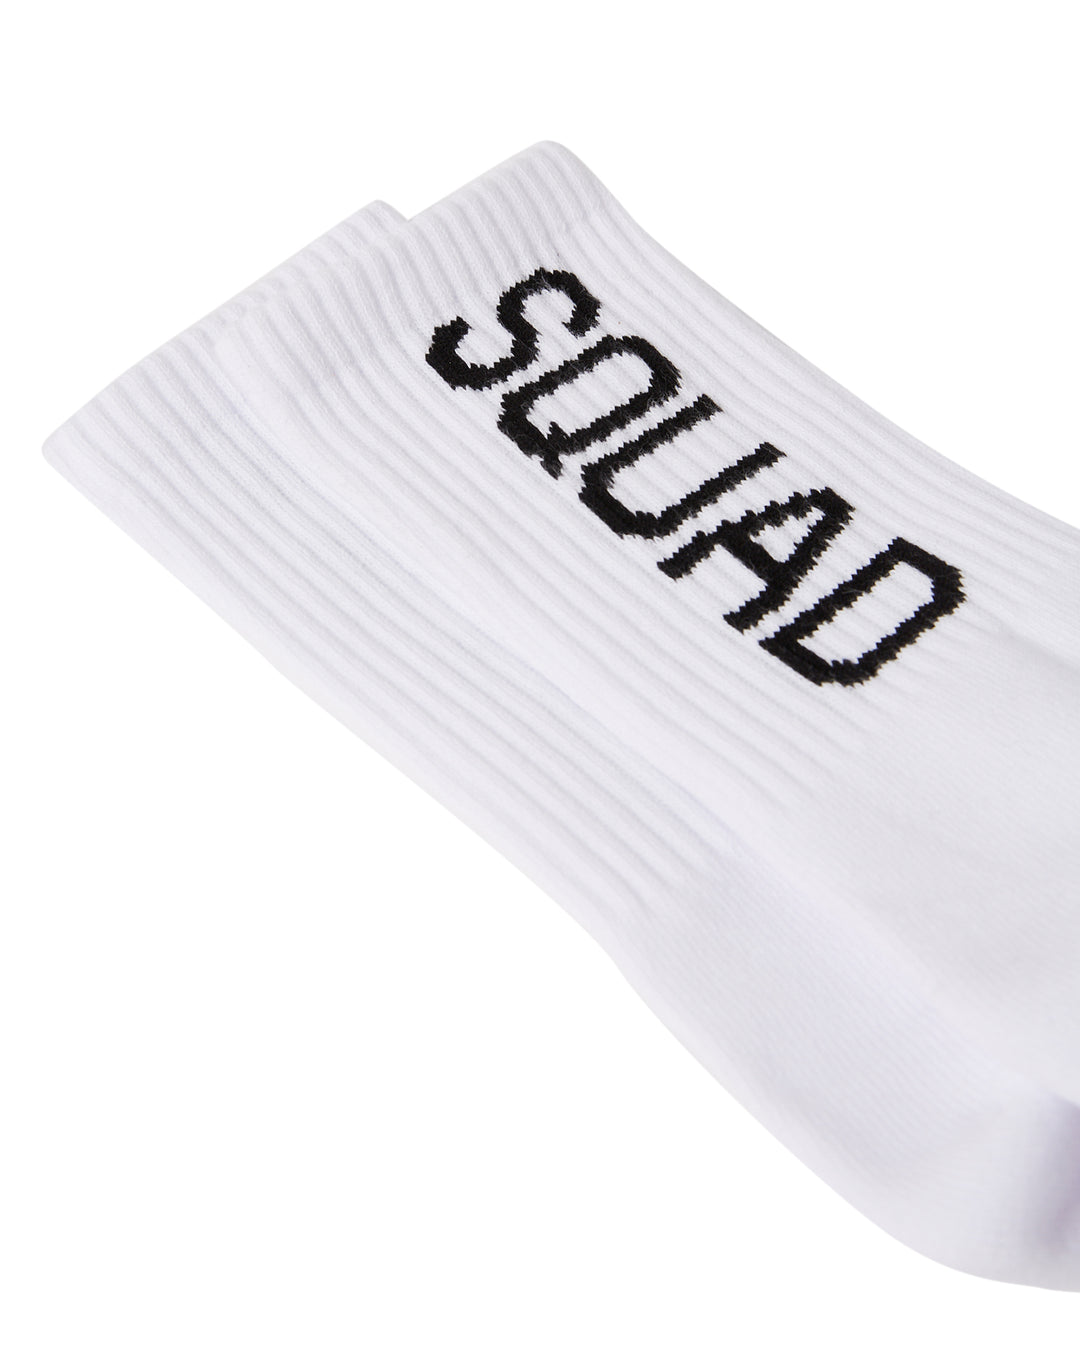 SQUAD Sock